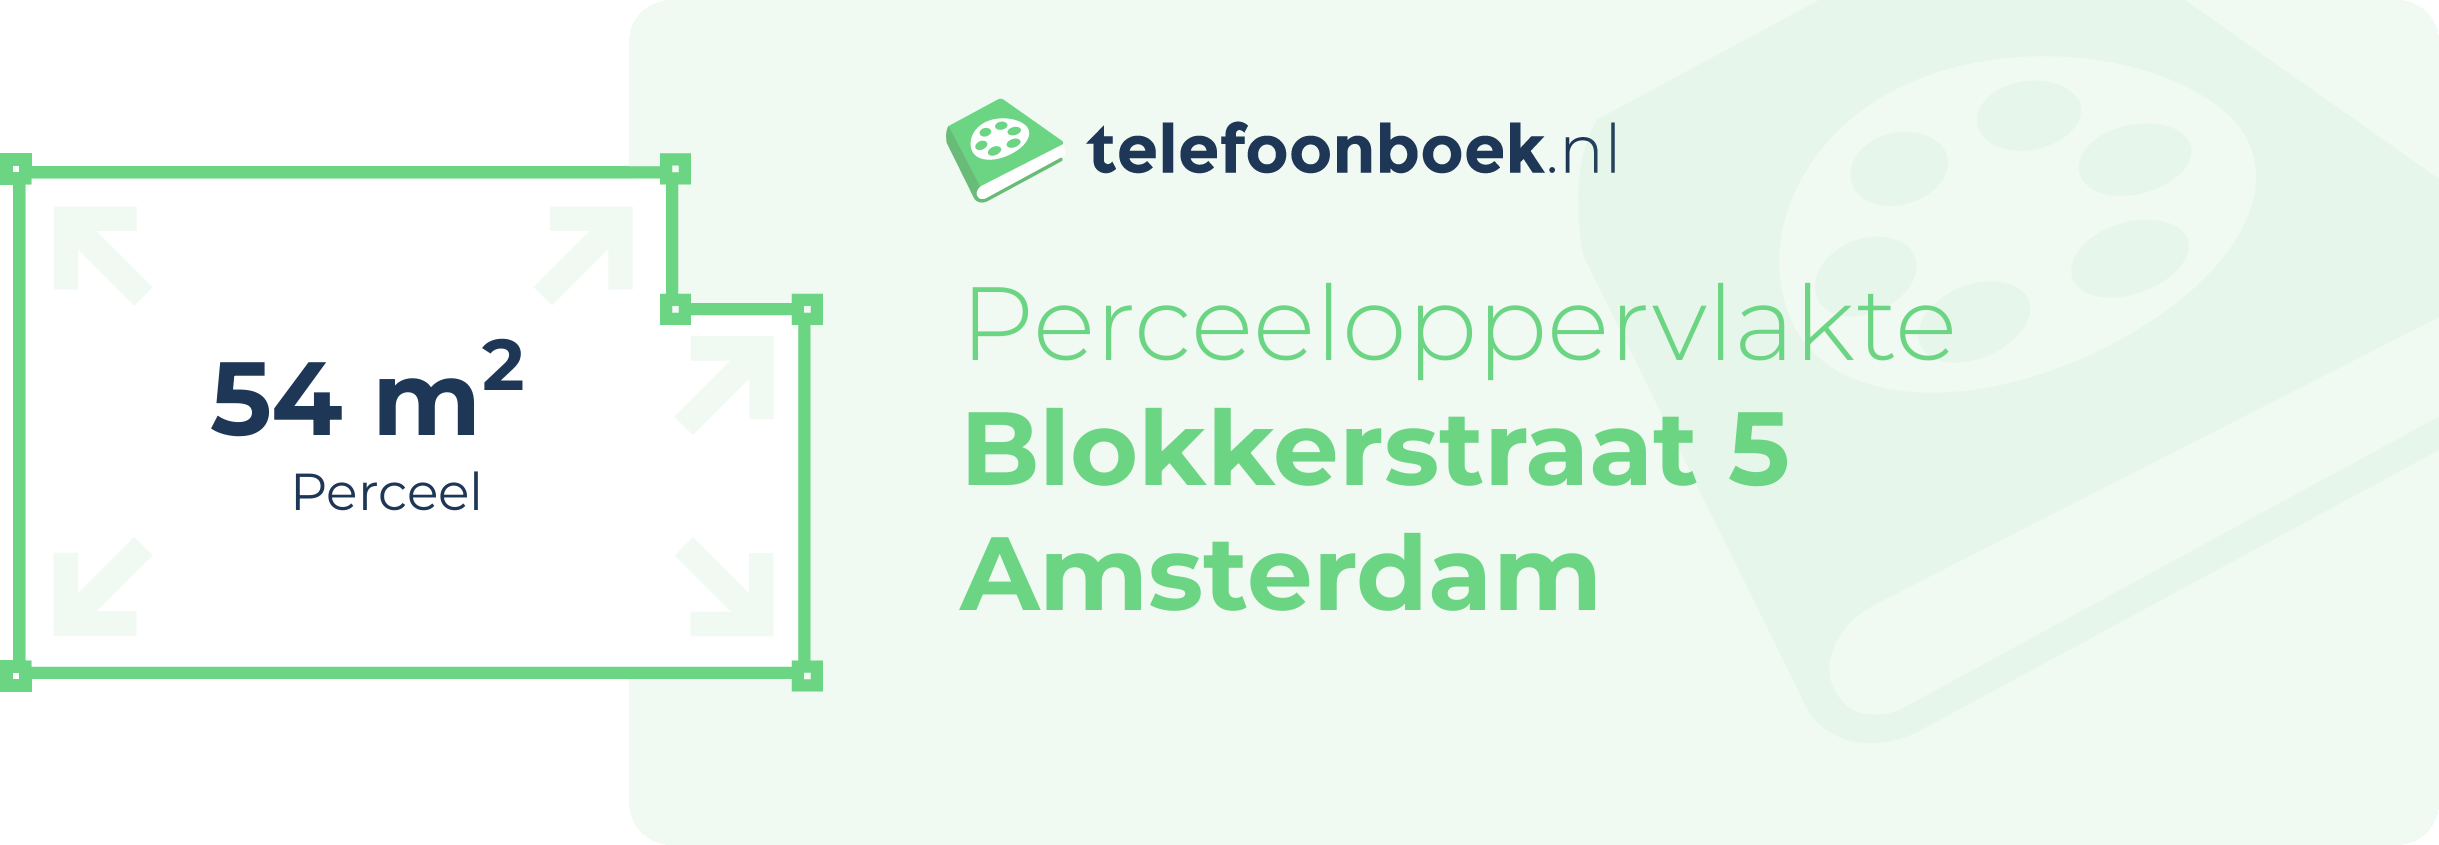 Perceeloppervlakte Blokkerstraat 5 Amsterdam